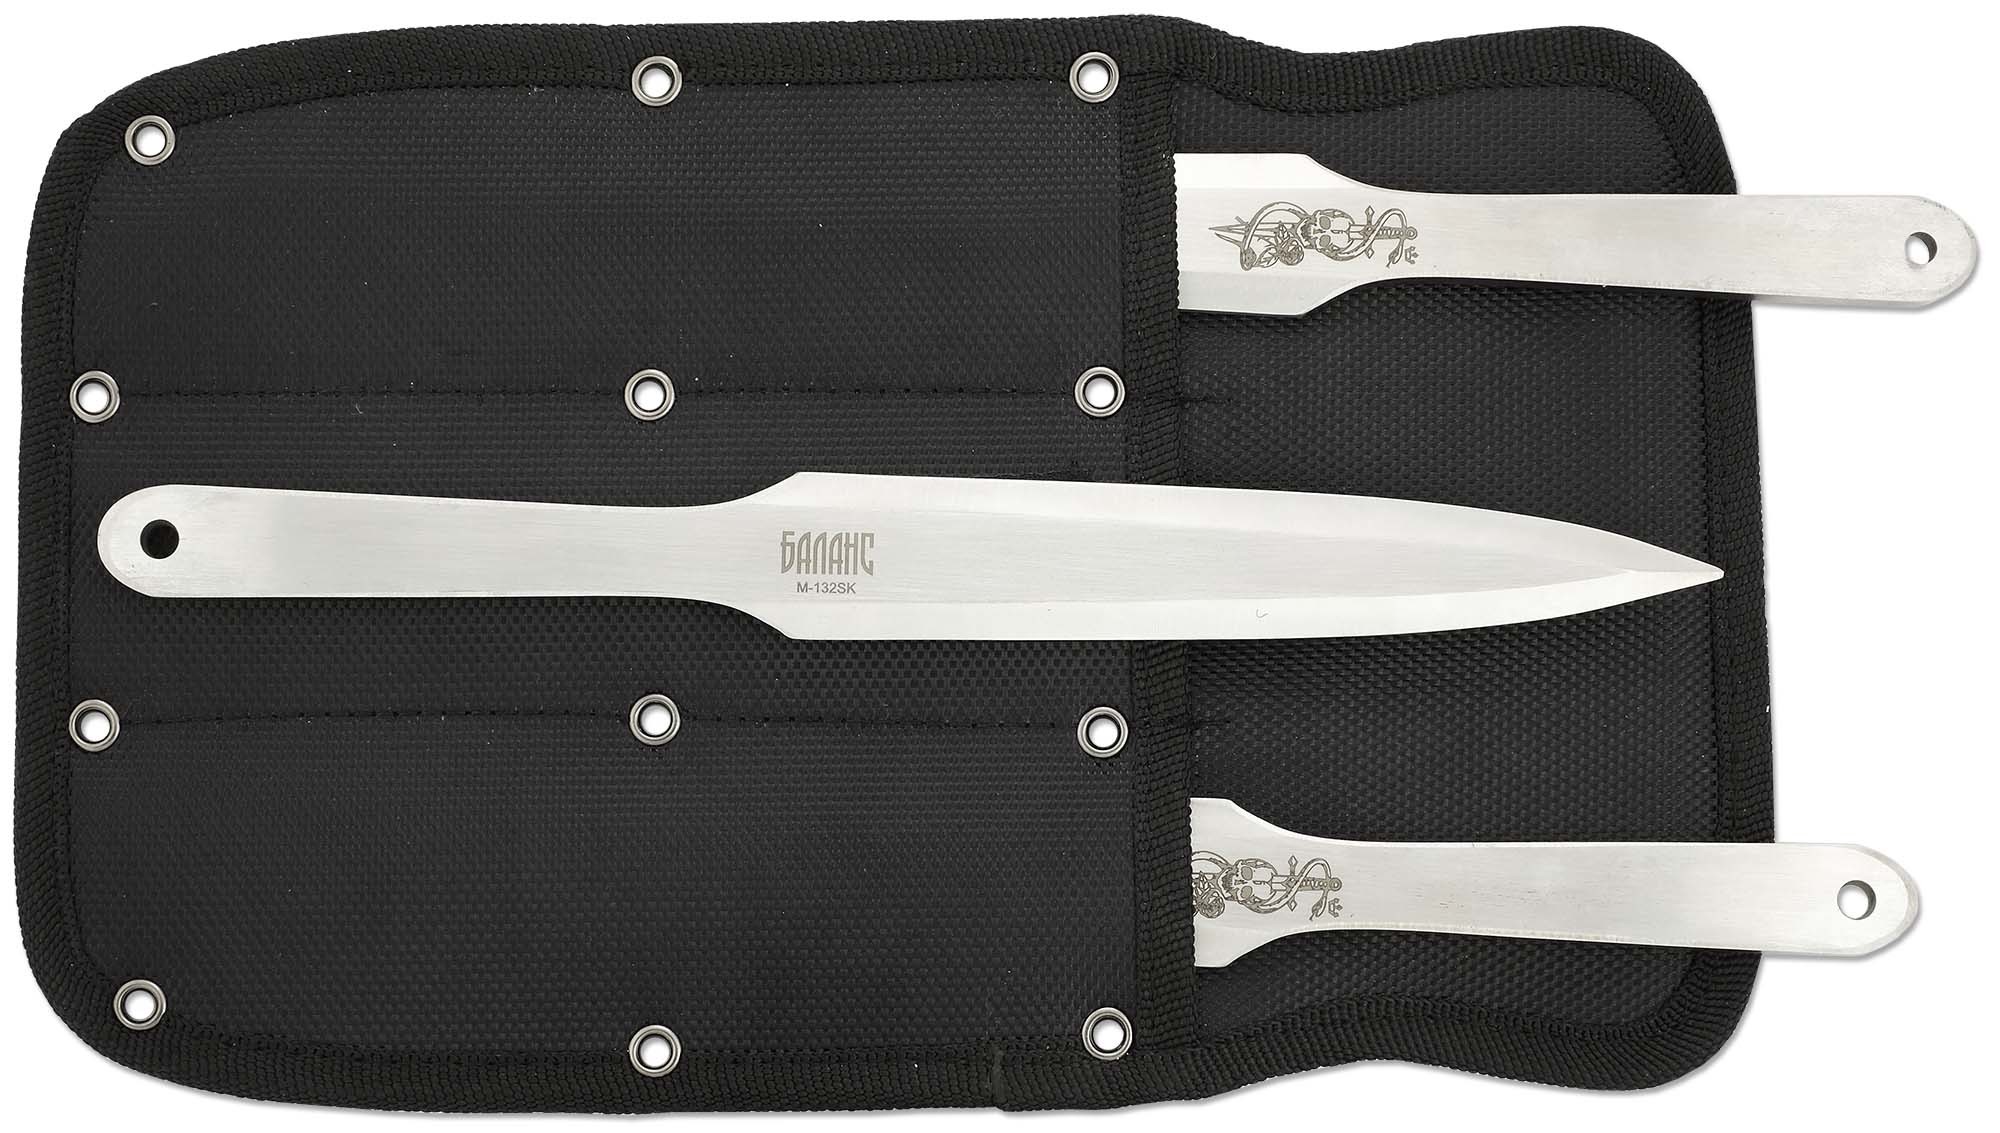 Набор из 3 метательных ножей Череп, M-132SK от Ножиков